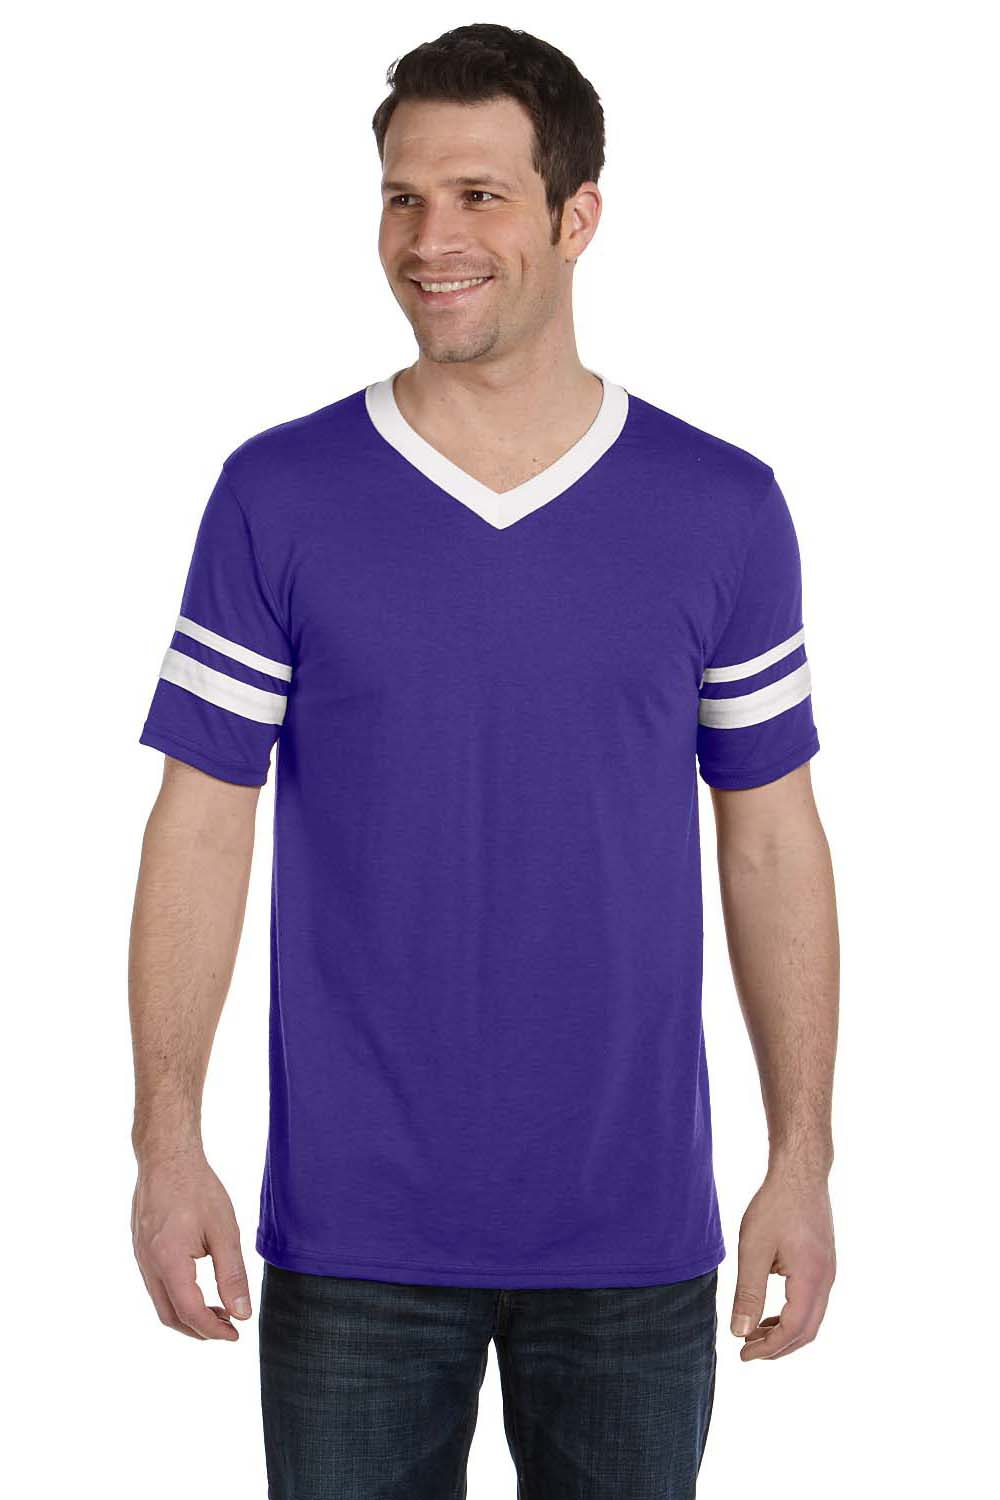 Augusta Sportswear 360 Mens Short Sleeve V-Neck T-Shirt Purple/White Model Front